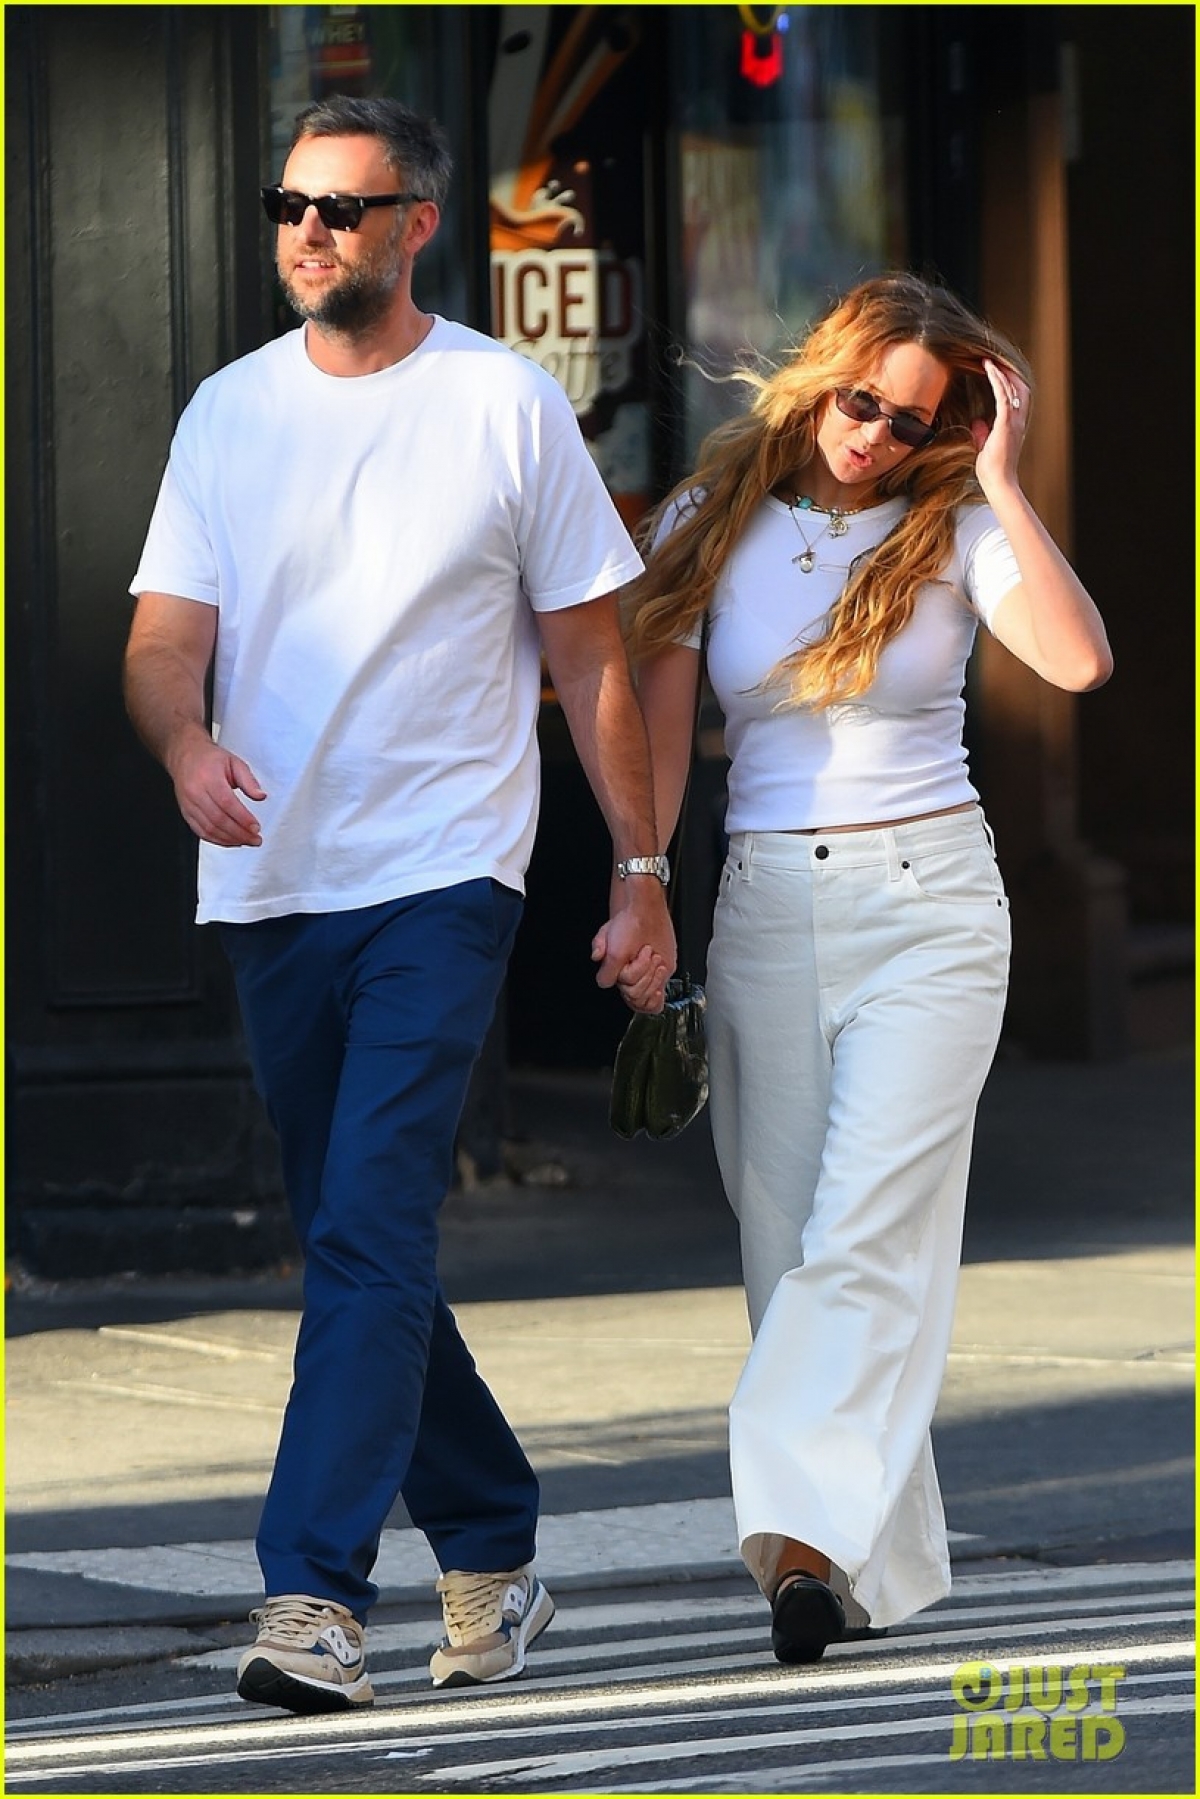 Vợ chồng Jennifer Lawrence diện đồ đồng điệu, tình tứ đi dạo trong công viên - Ảnh 6.